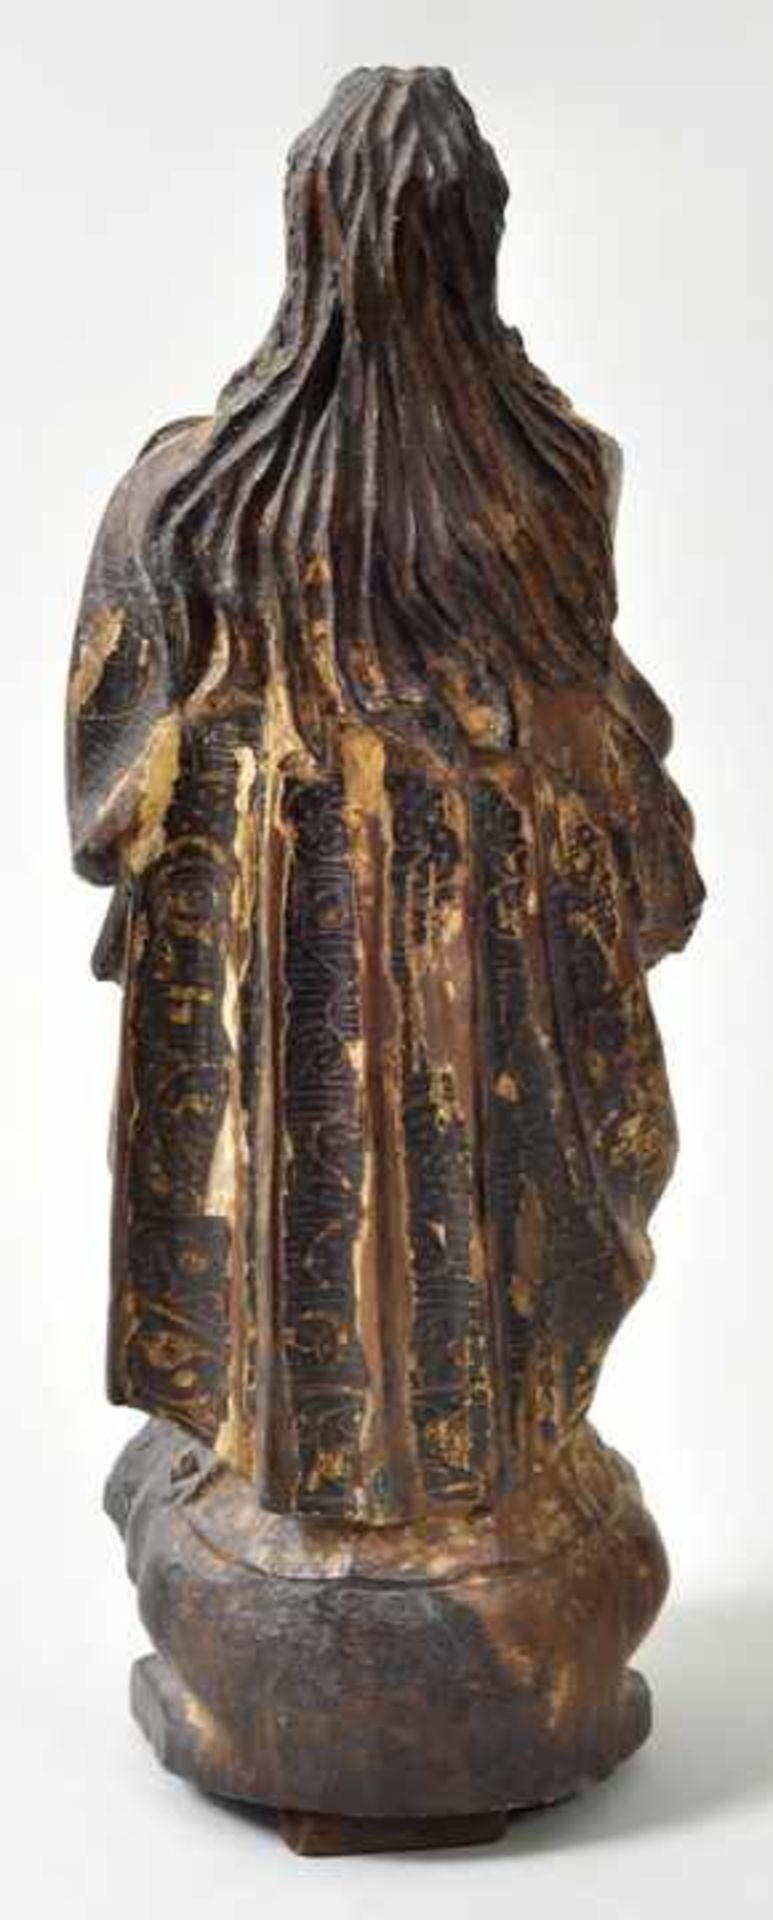 Maria Immaculata, Spanien, um 1700Wurzelholz, geschnitzt, Farbfassung. In streng aufgefasster, - Bild 3 aus 3